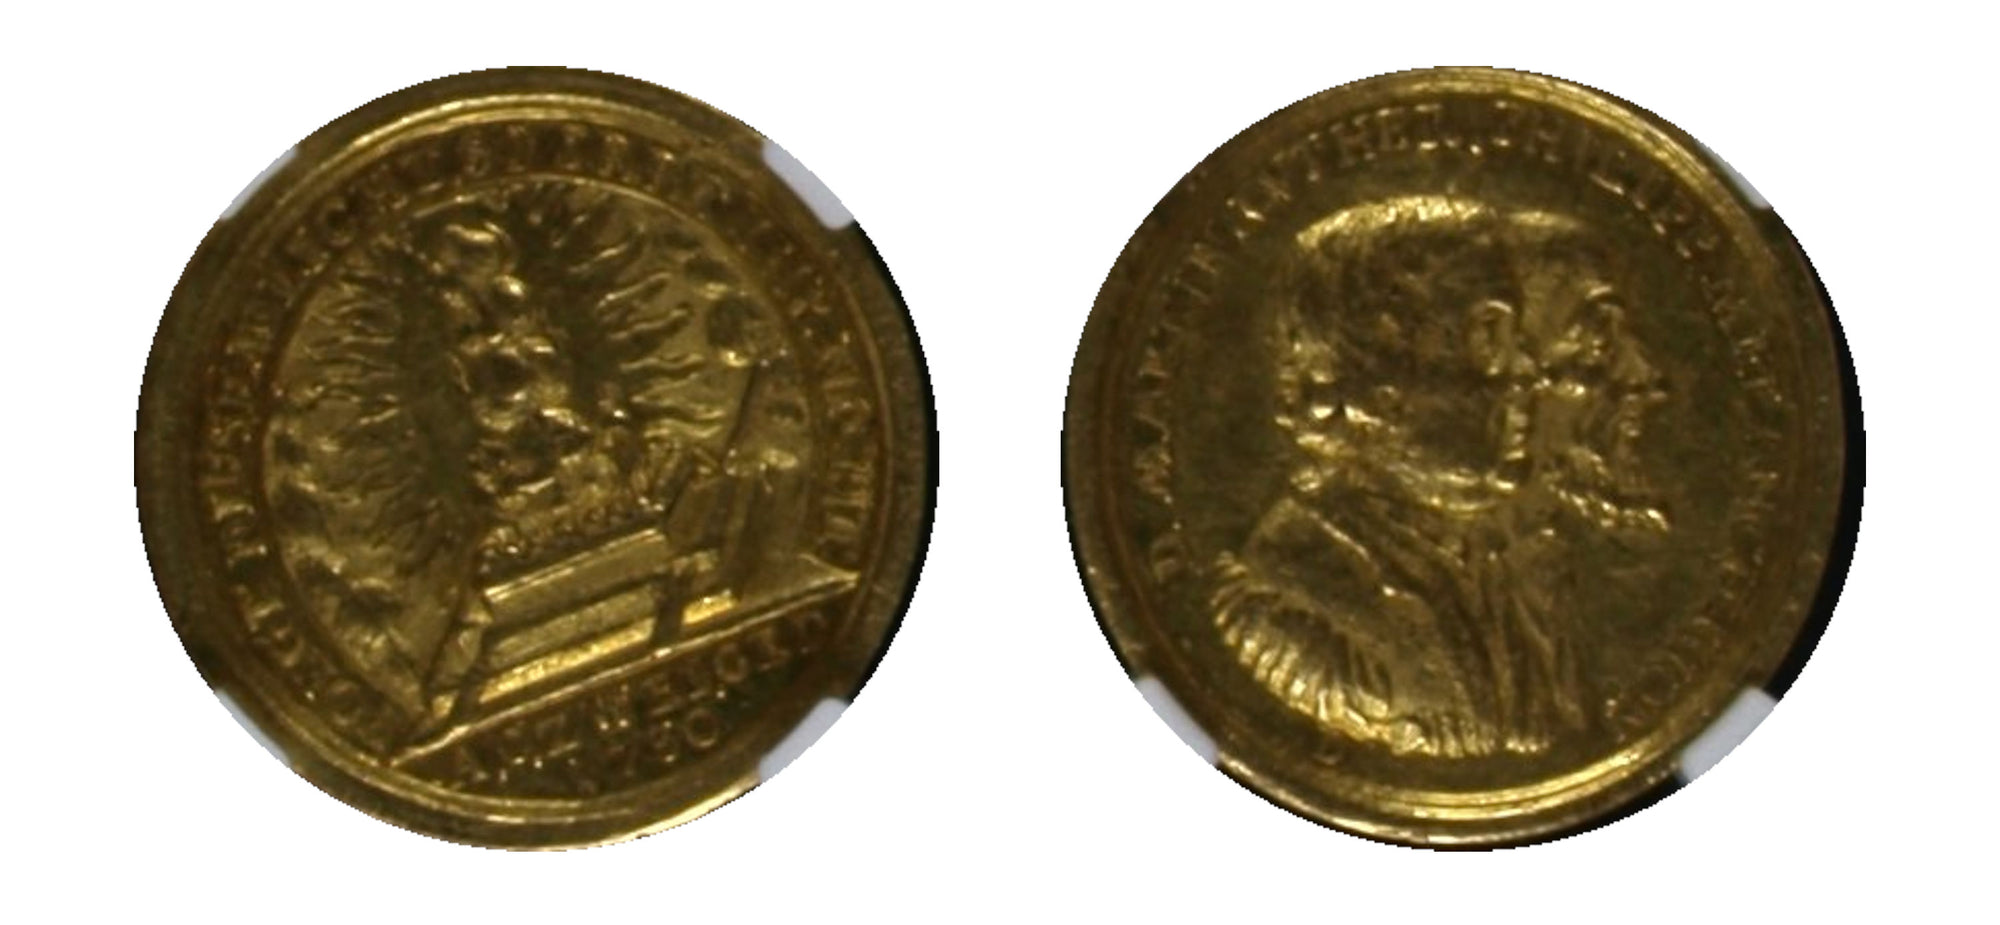 1730 NURNBERG Gold Medal ERLANGER-2203 NGC XF45 - Hard Asset Management, Inc